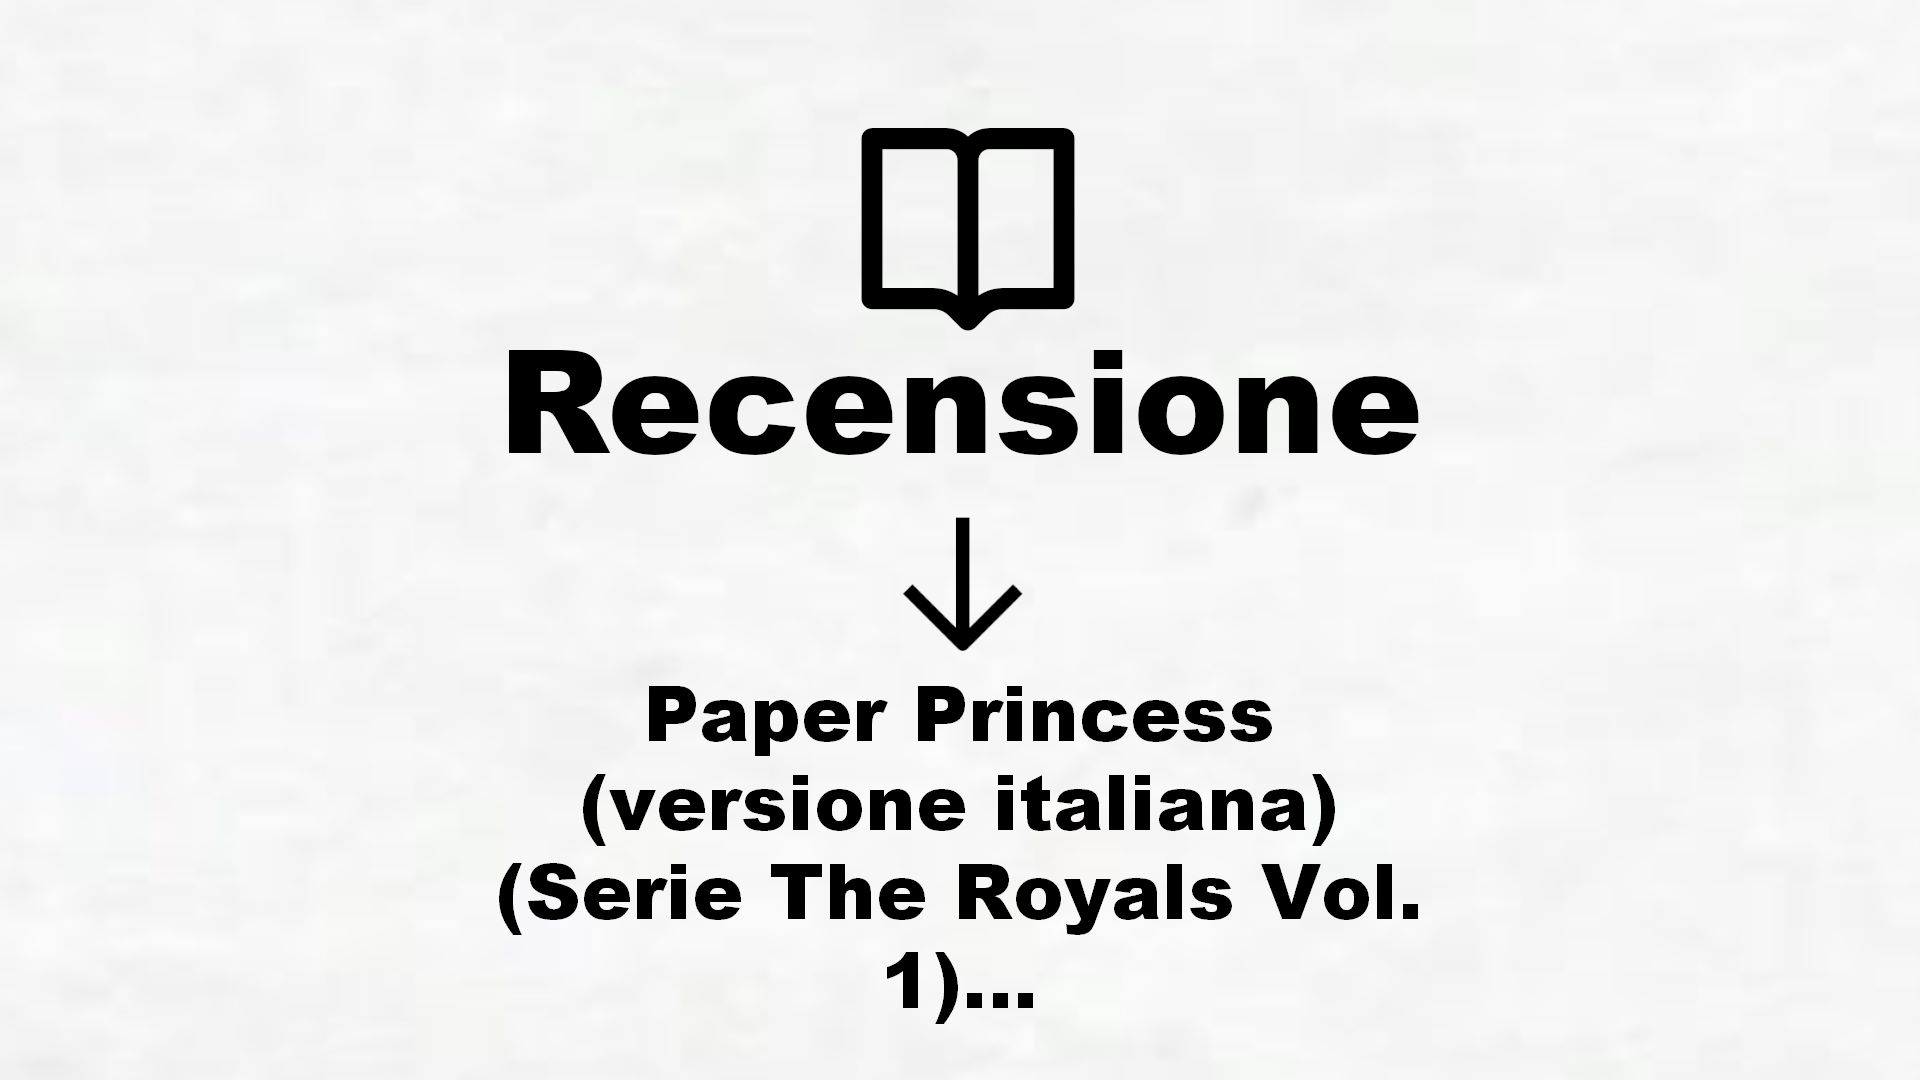 Paper Princess (versione italiana) (Serie The Royals Vol. 1) – Recensione Libro